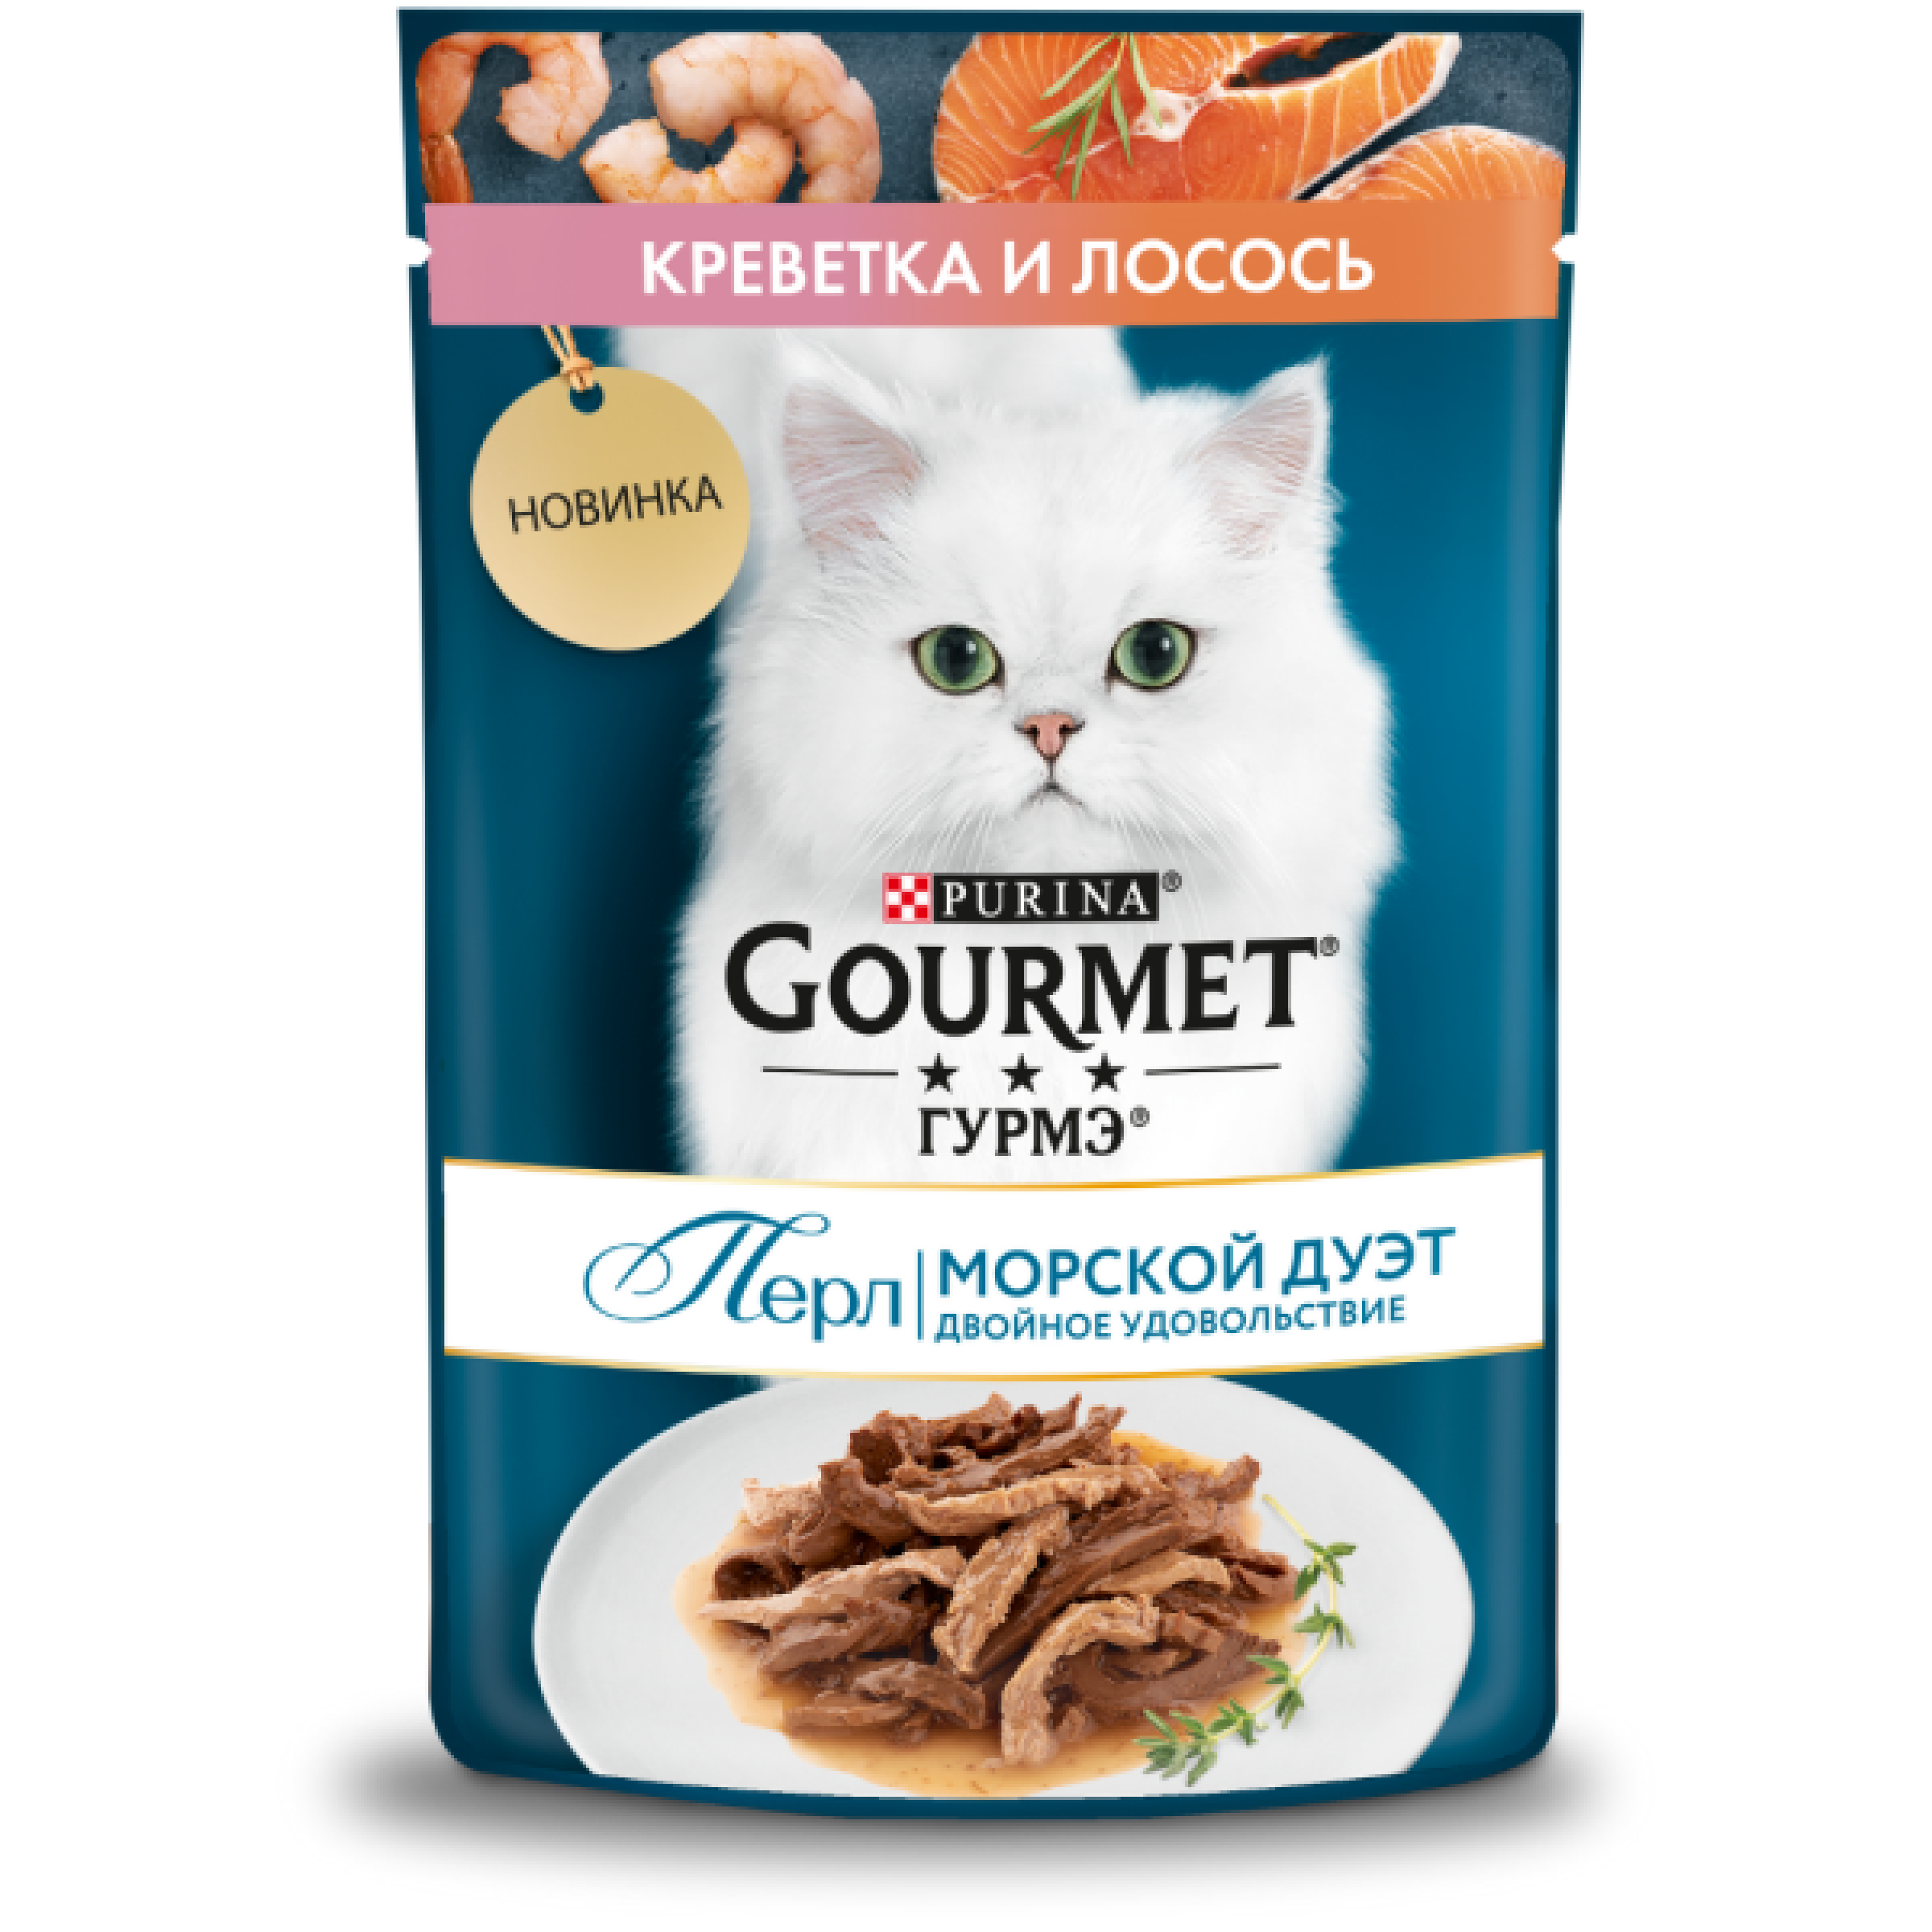 Влажный корм Gourmet Морской Дуэт для взрослых кошек с креветкой и лососем, 75 г